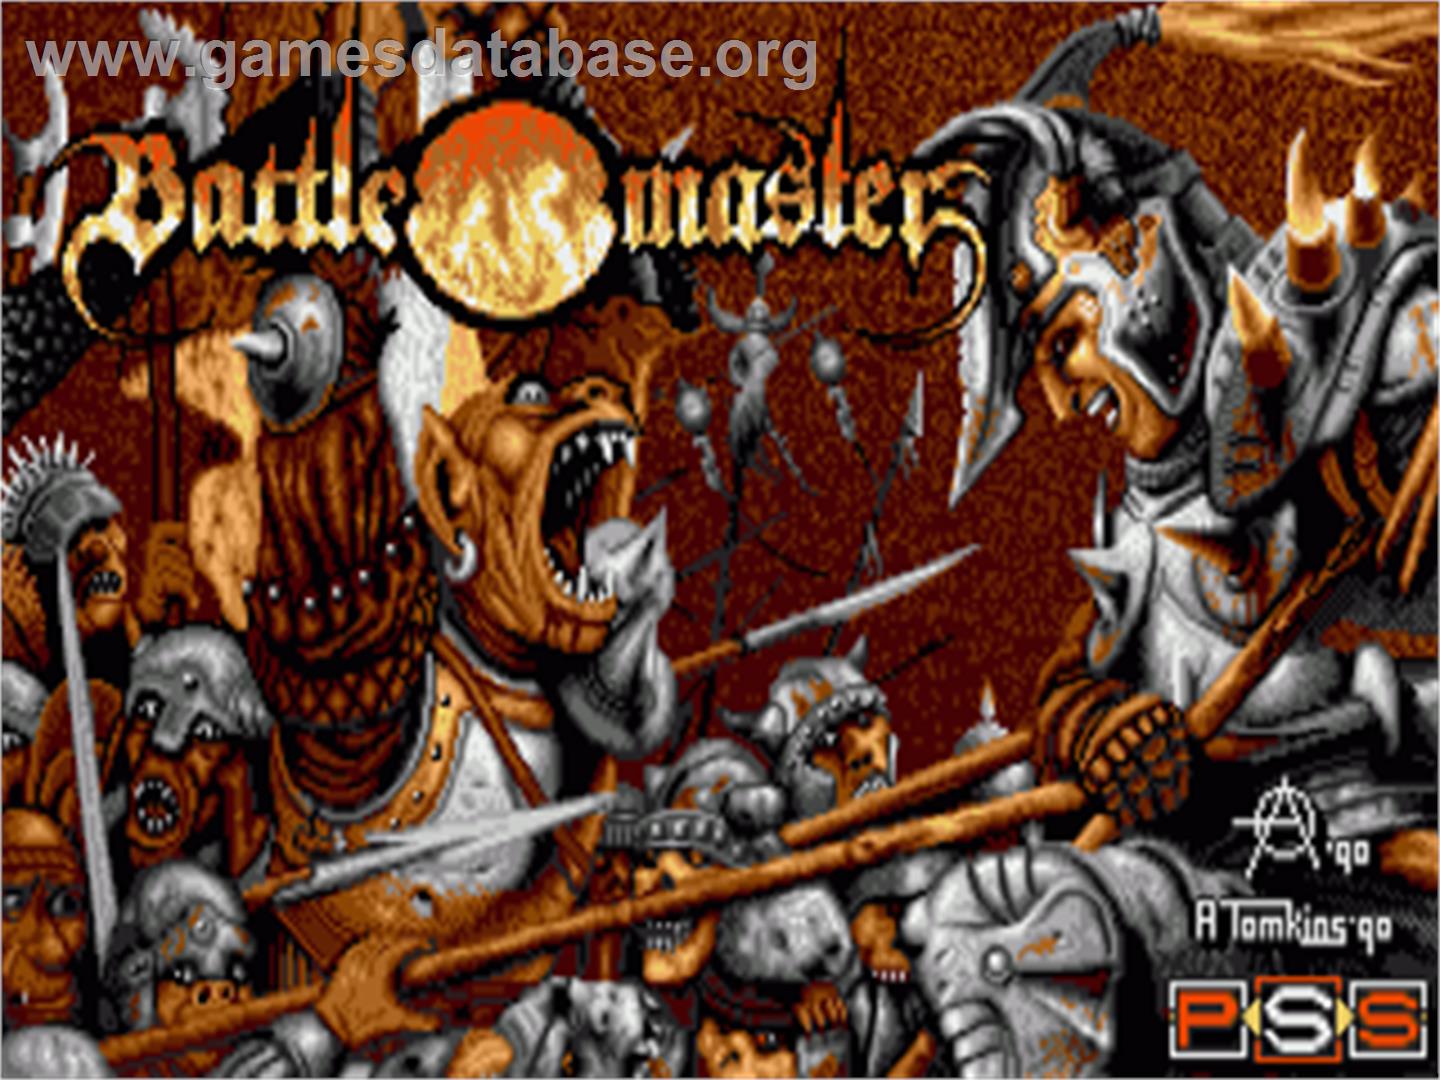 Battle Master - Commodore Amiga - Artwork - Title Screen